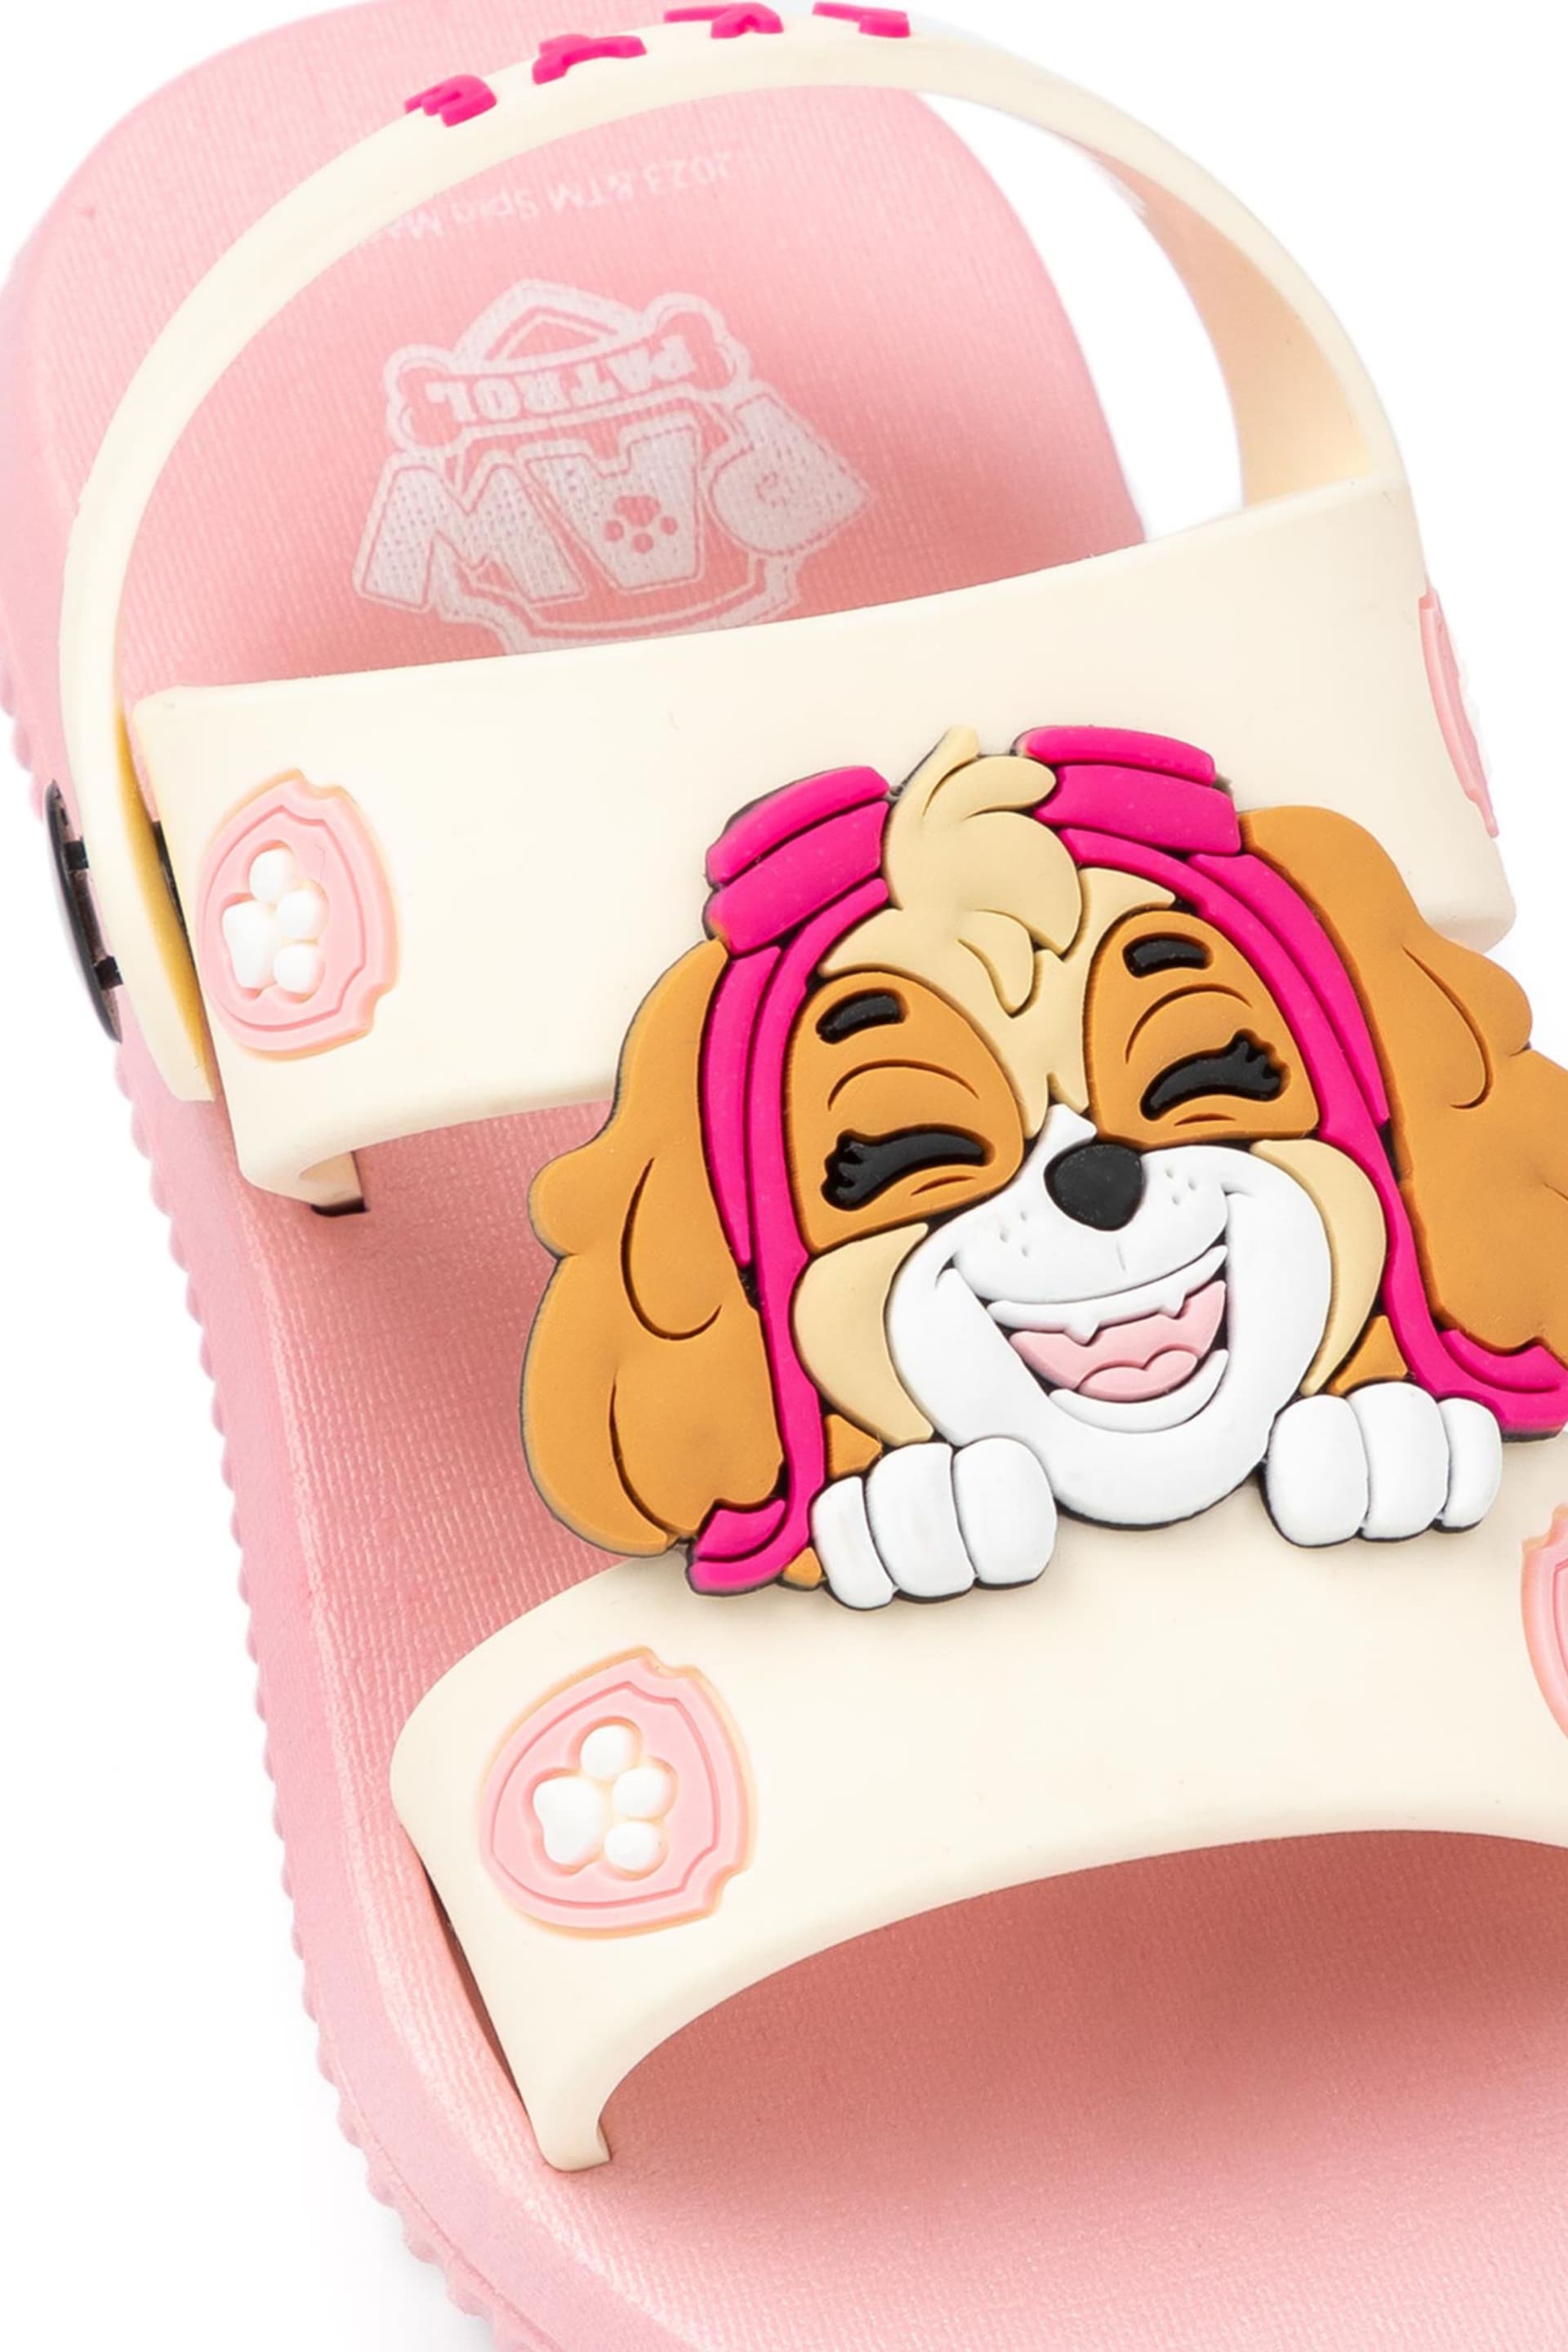 Vanilla Underground Pink Girls Paw Patrol Disney Sandals - Image 5 of 5